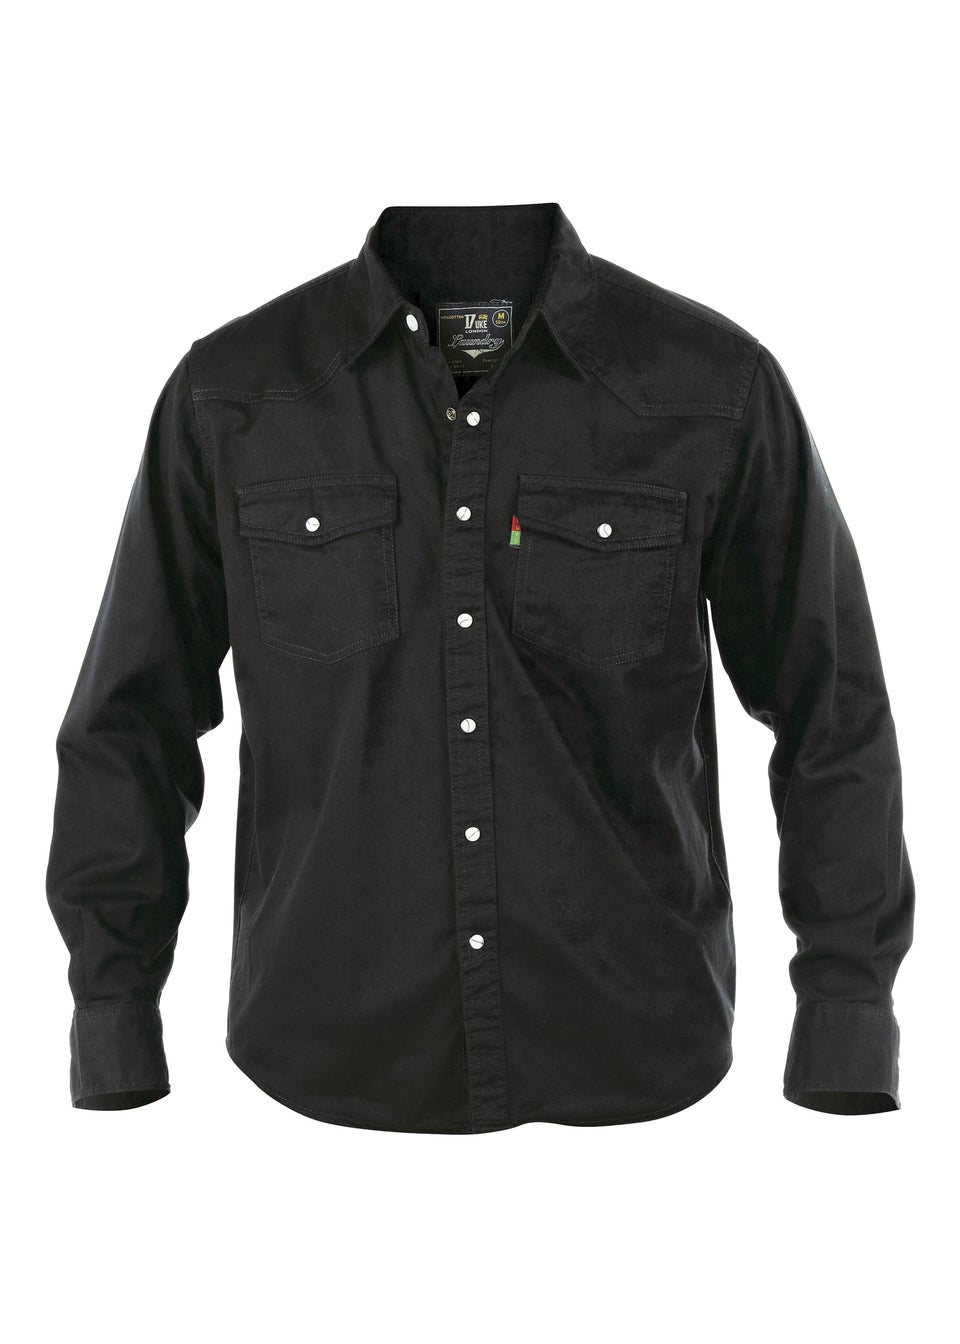 Duke Black Western Style Denim Shirt